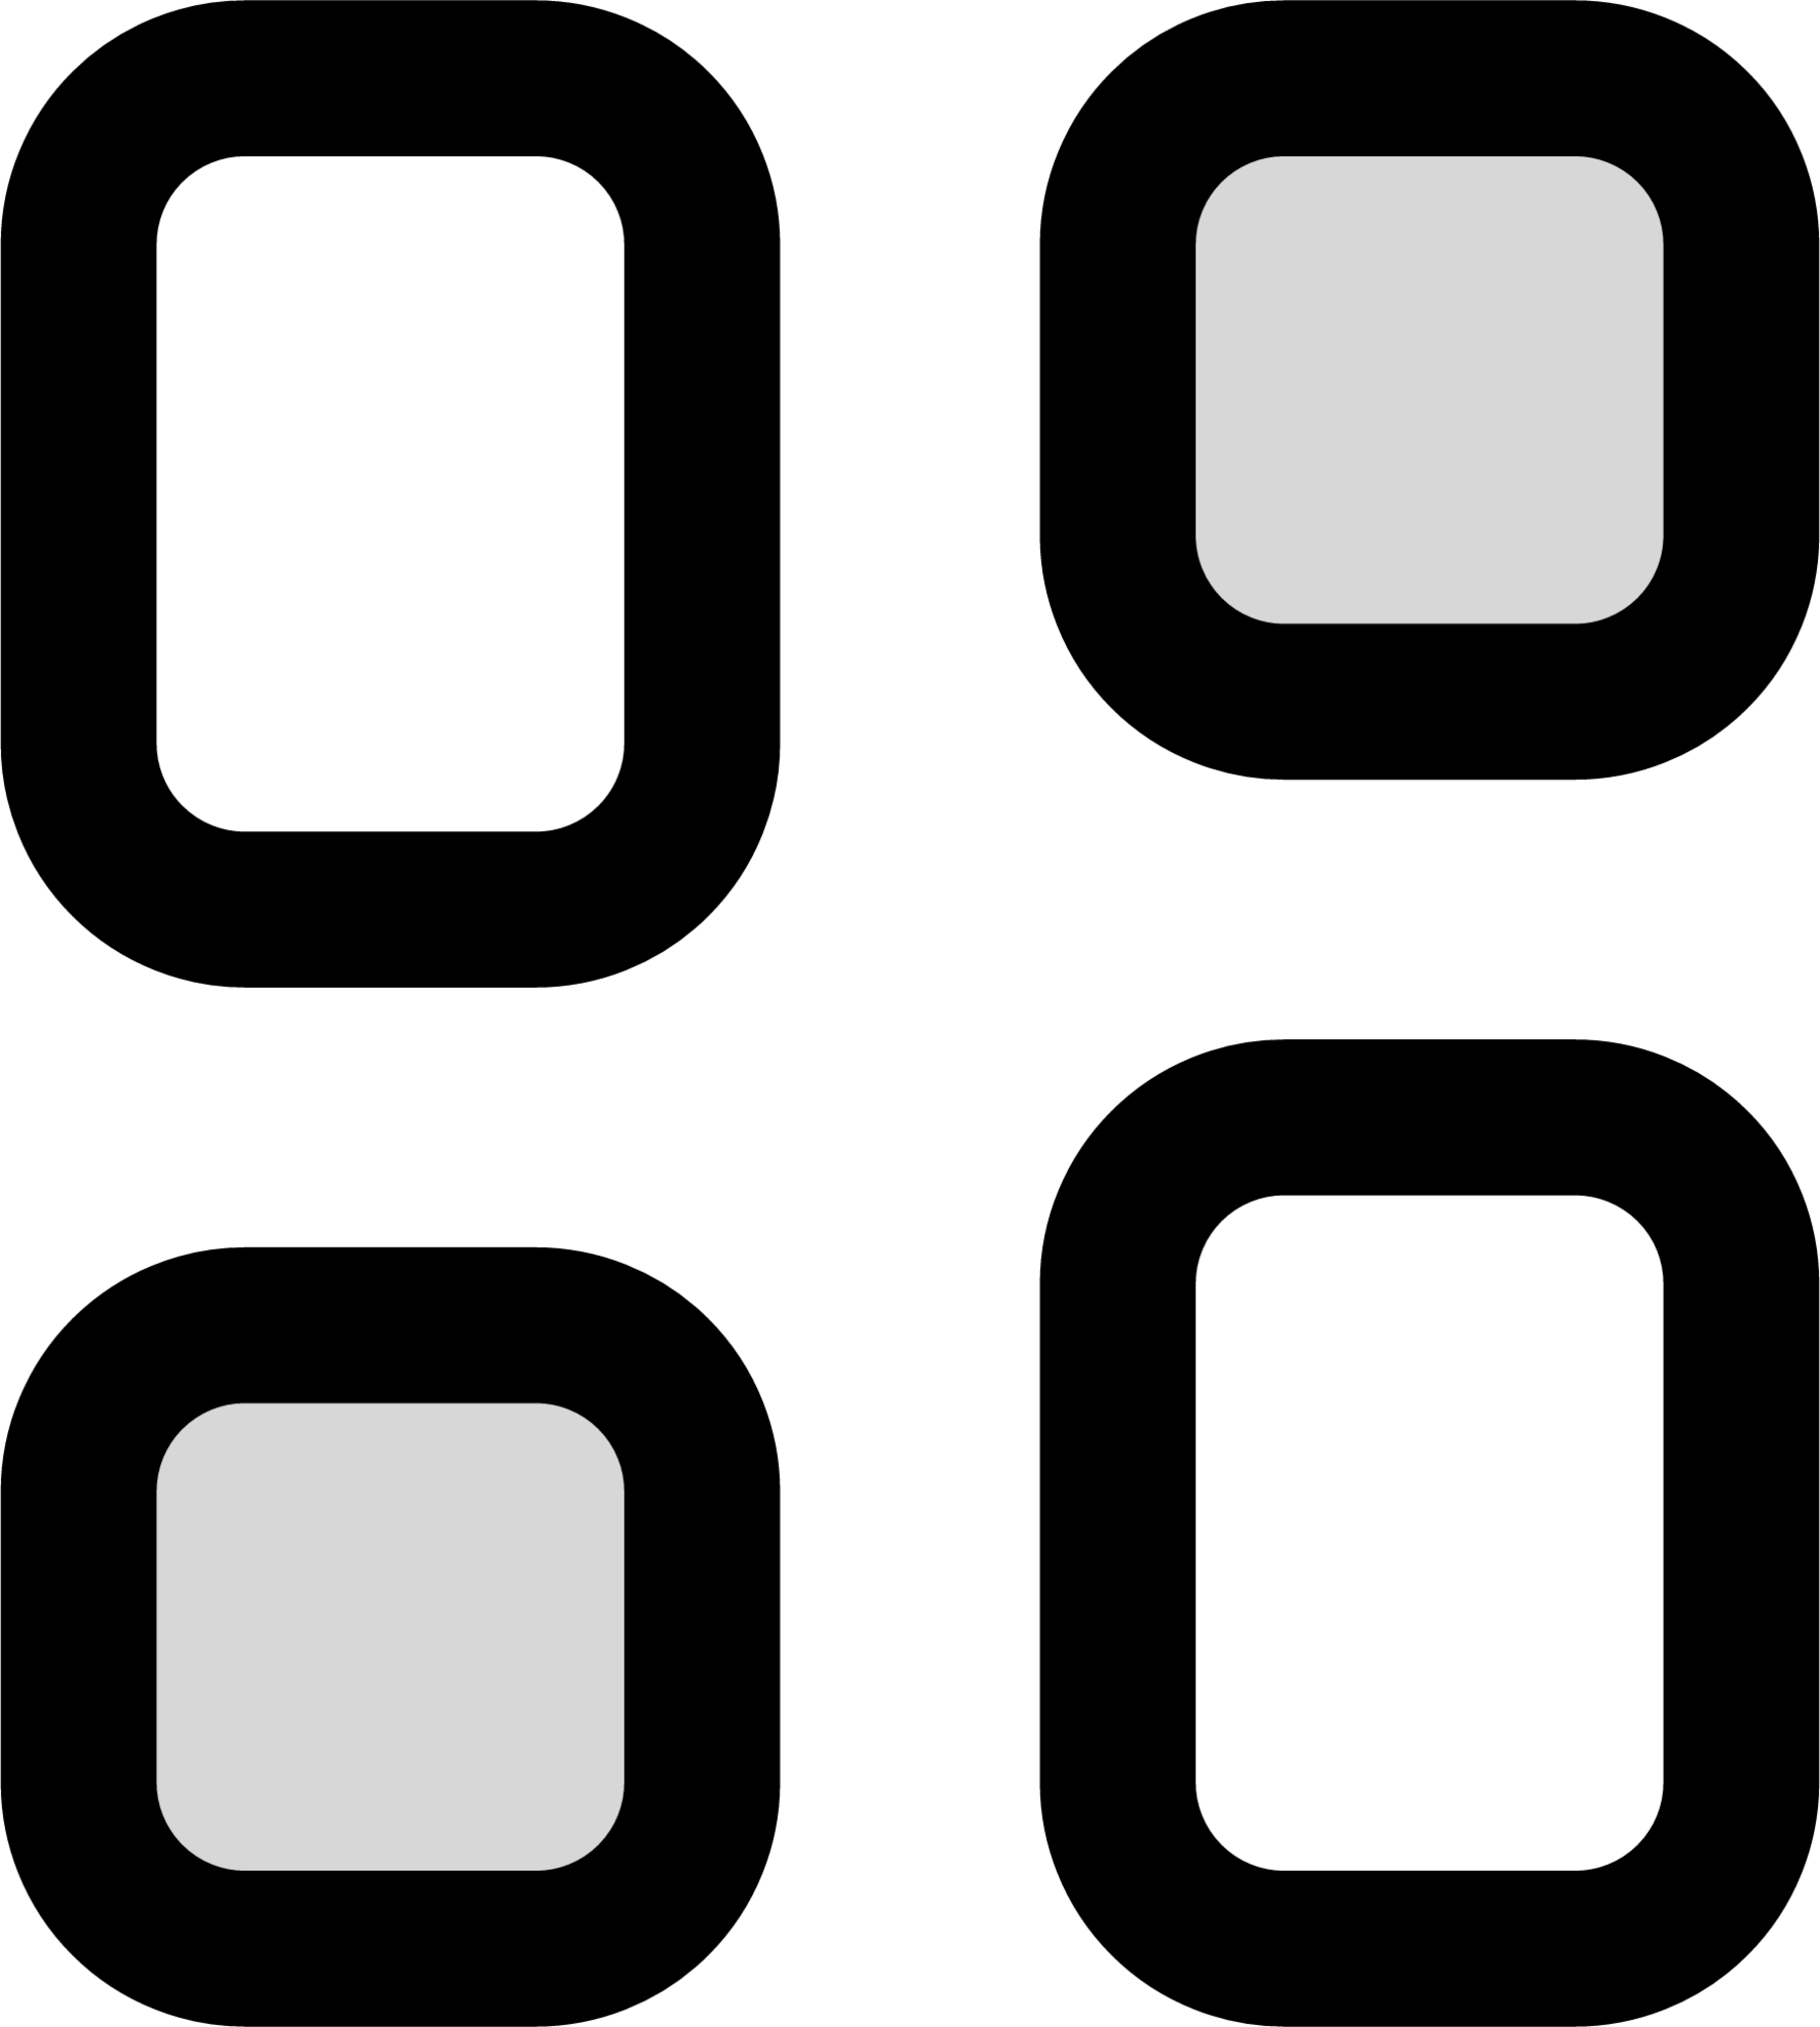 Dashboard (duotone) icon